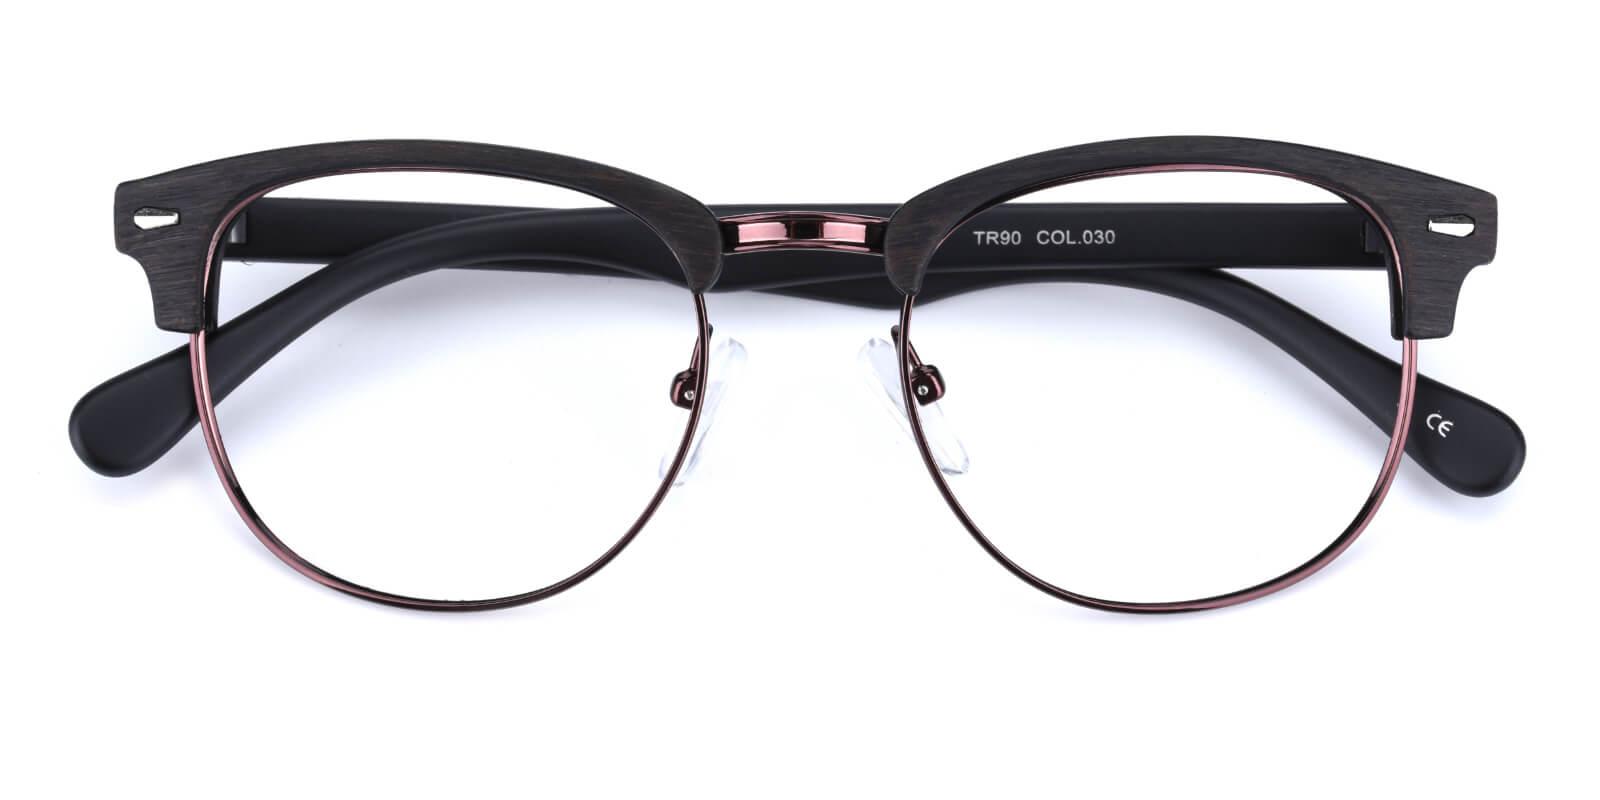 Fort Wayne Eyeglasses Cheap Prescription Glasses Online